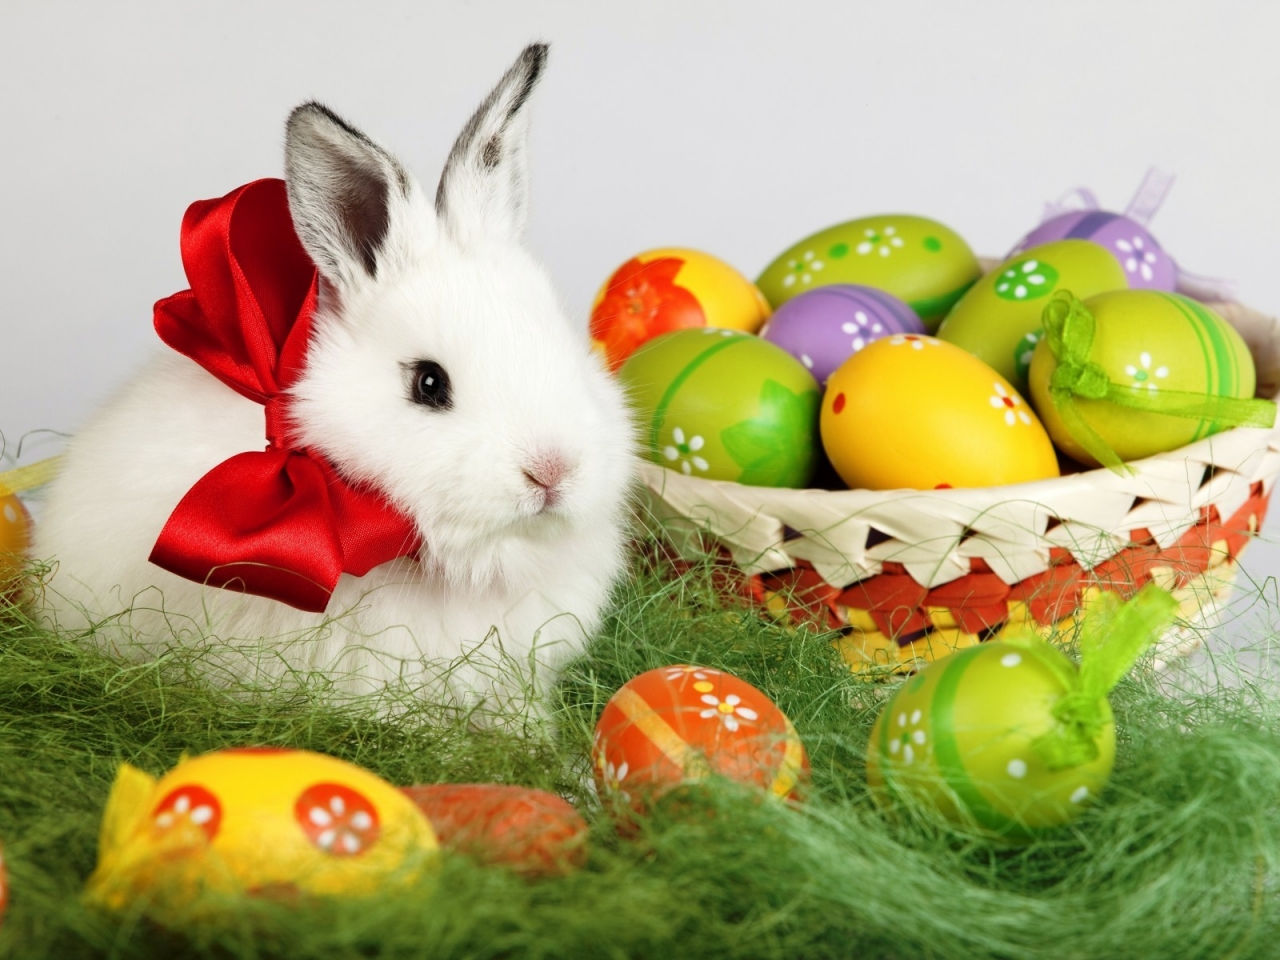 Easter White Rabbit for 1280 x 960 resolution